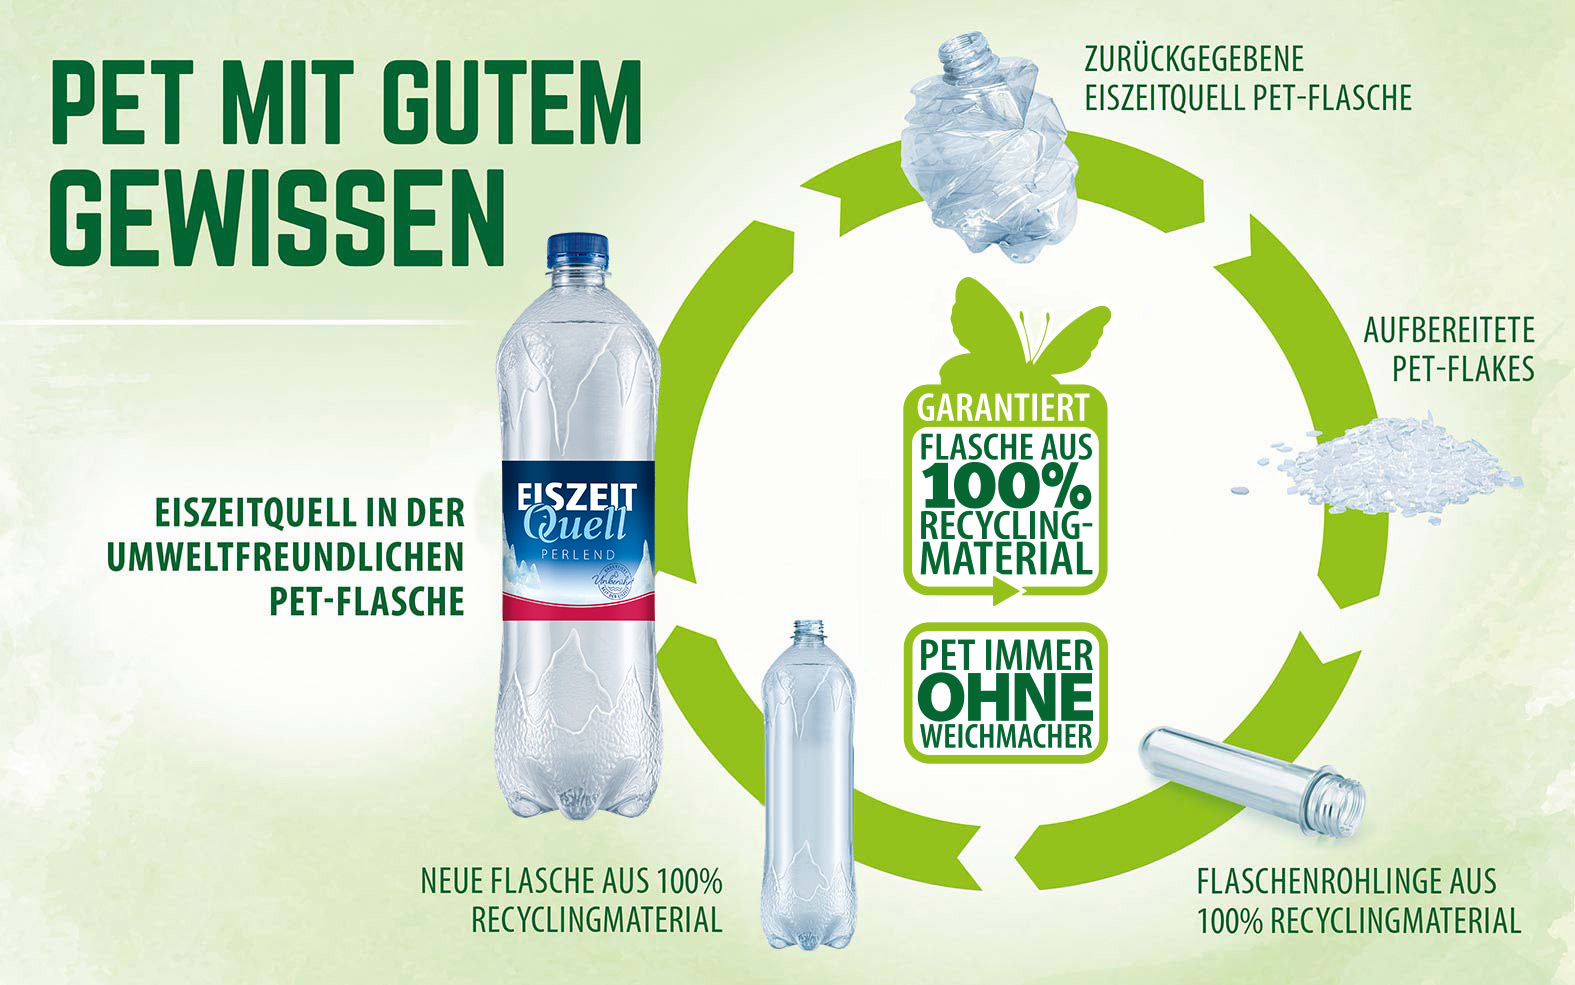 EiszeitQuell | PET-Flaschen aus Recycling-Material 100